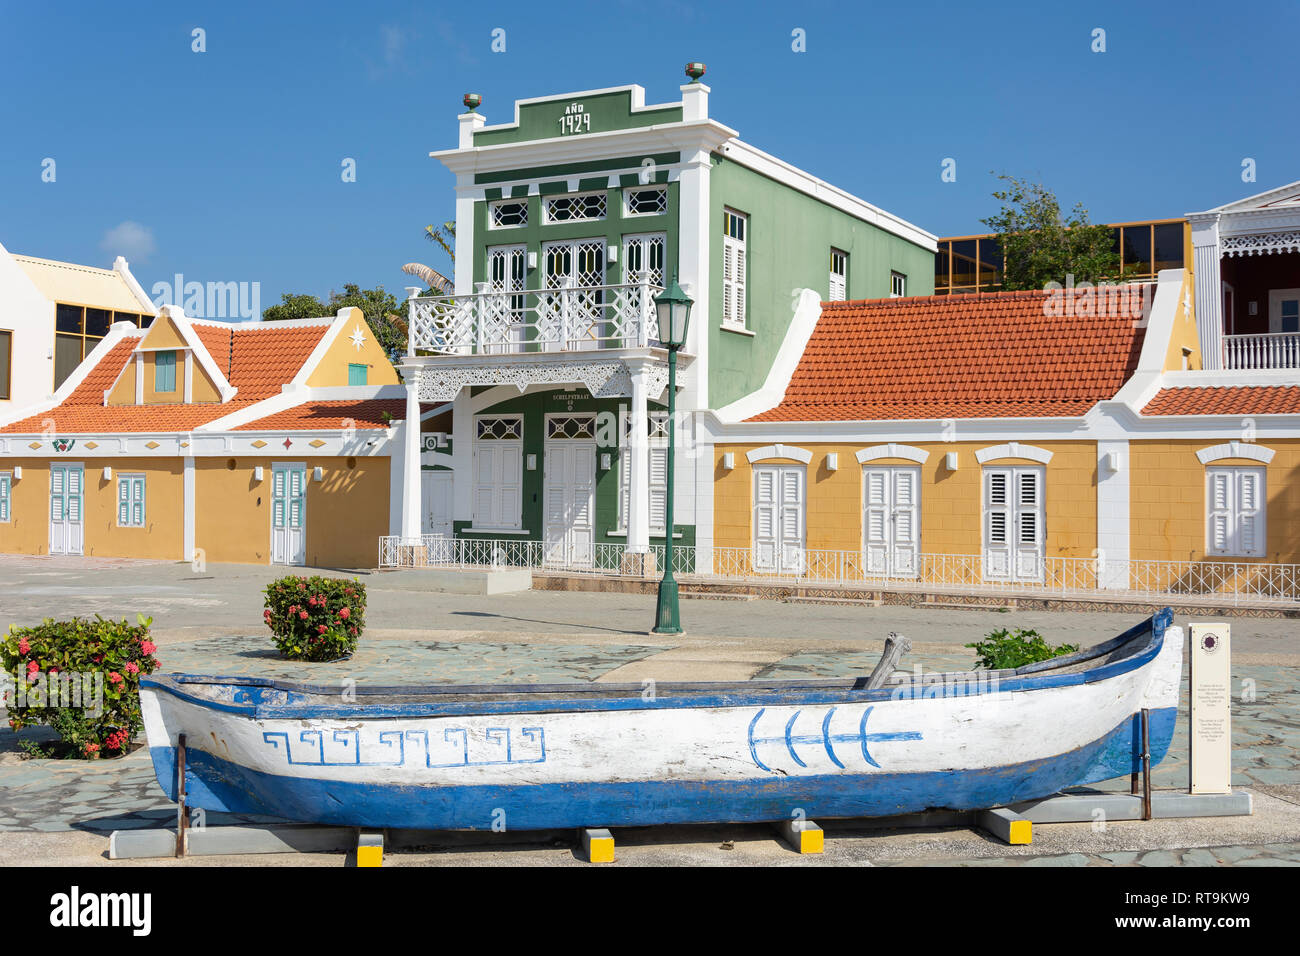 Museo Arqueológico Nacional de Aruba, Schelpstraat, Oranjestad, Aruba, ABC islas de Sotavento, Antillas, Caribe Foto de stock